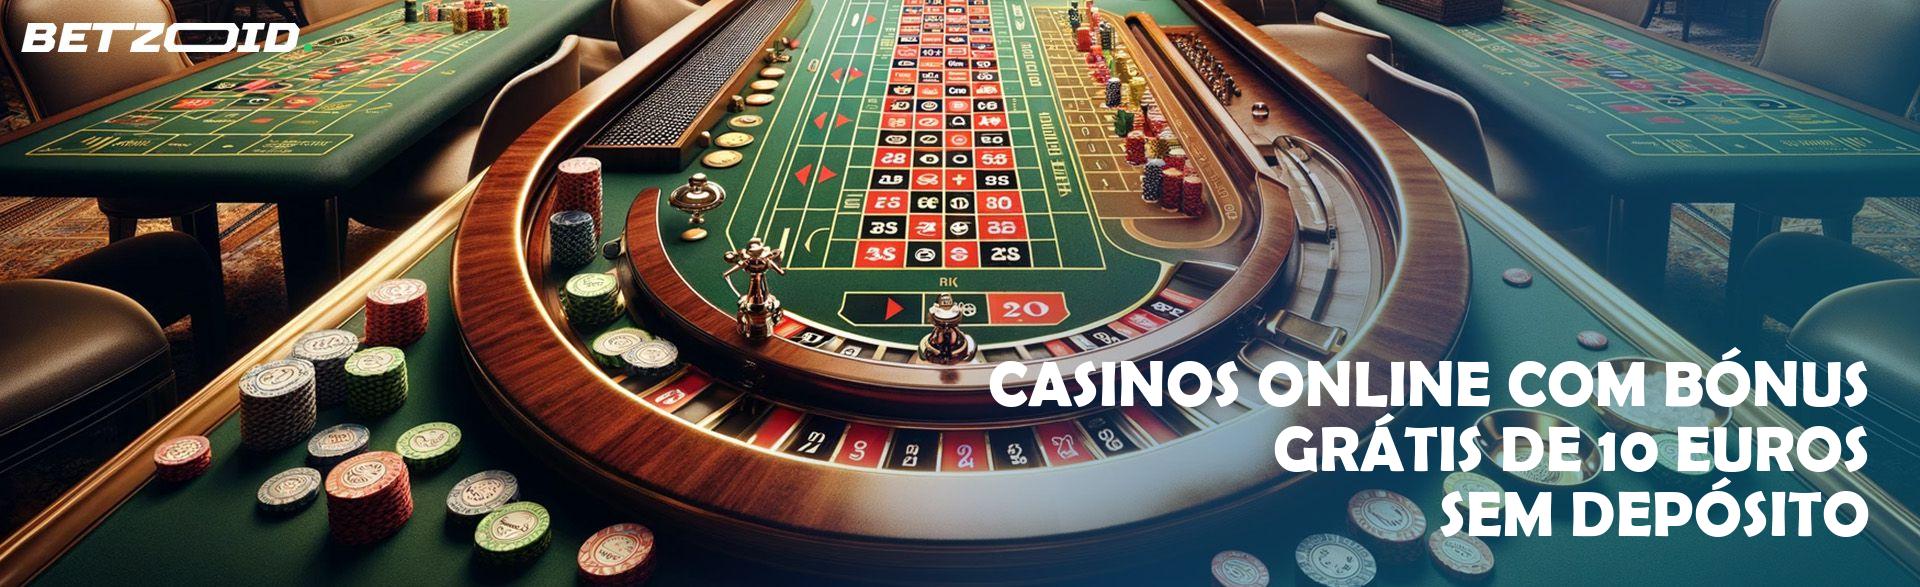 Casinos Online com Bónus Grátis de 10 Euros sem Depósito.